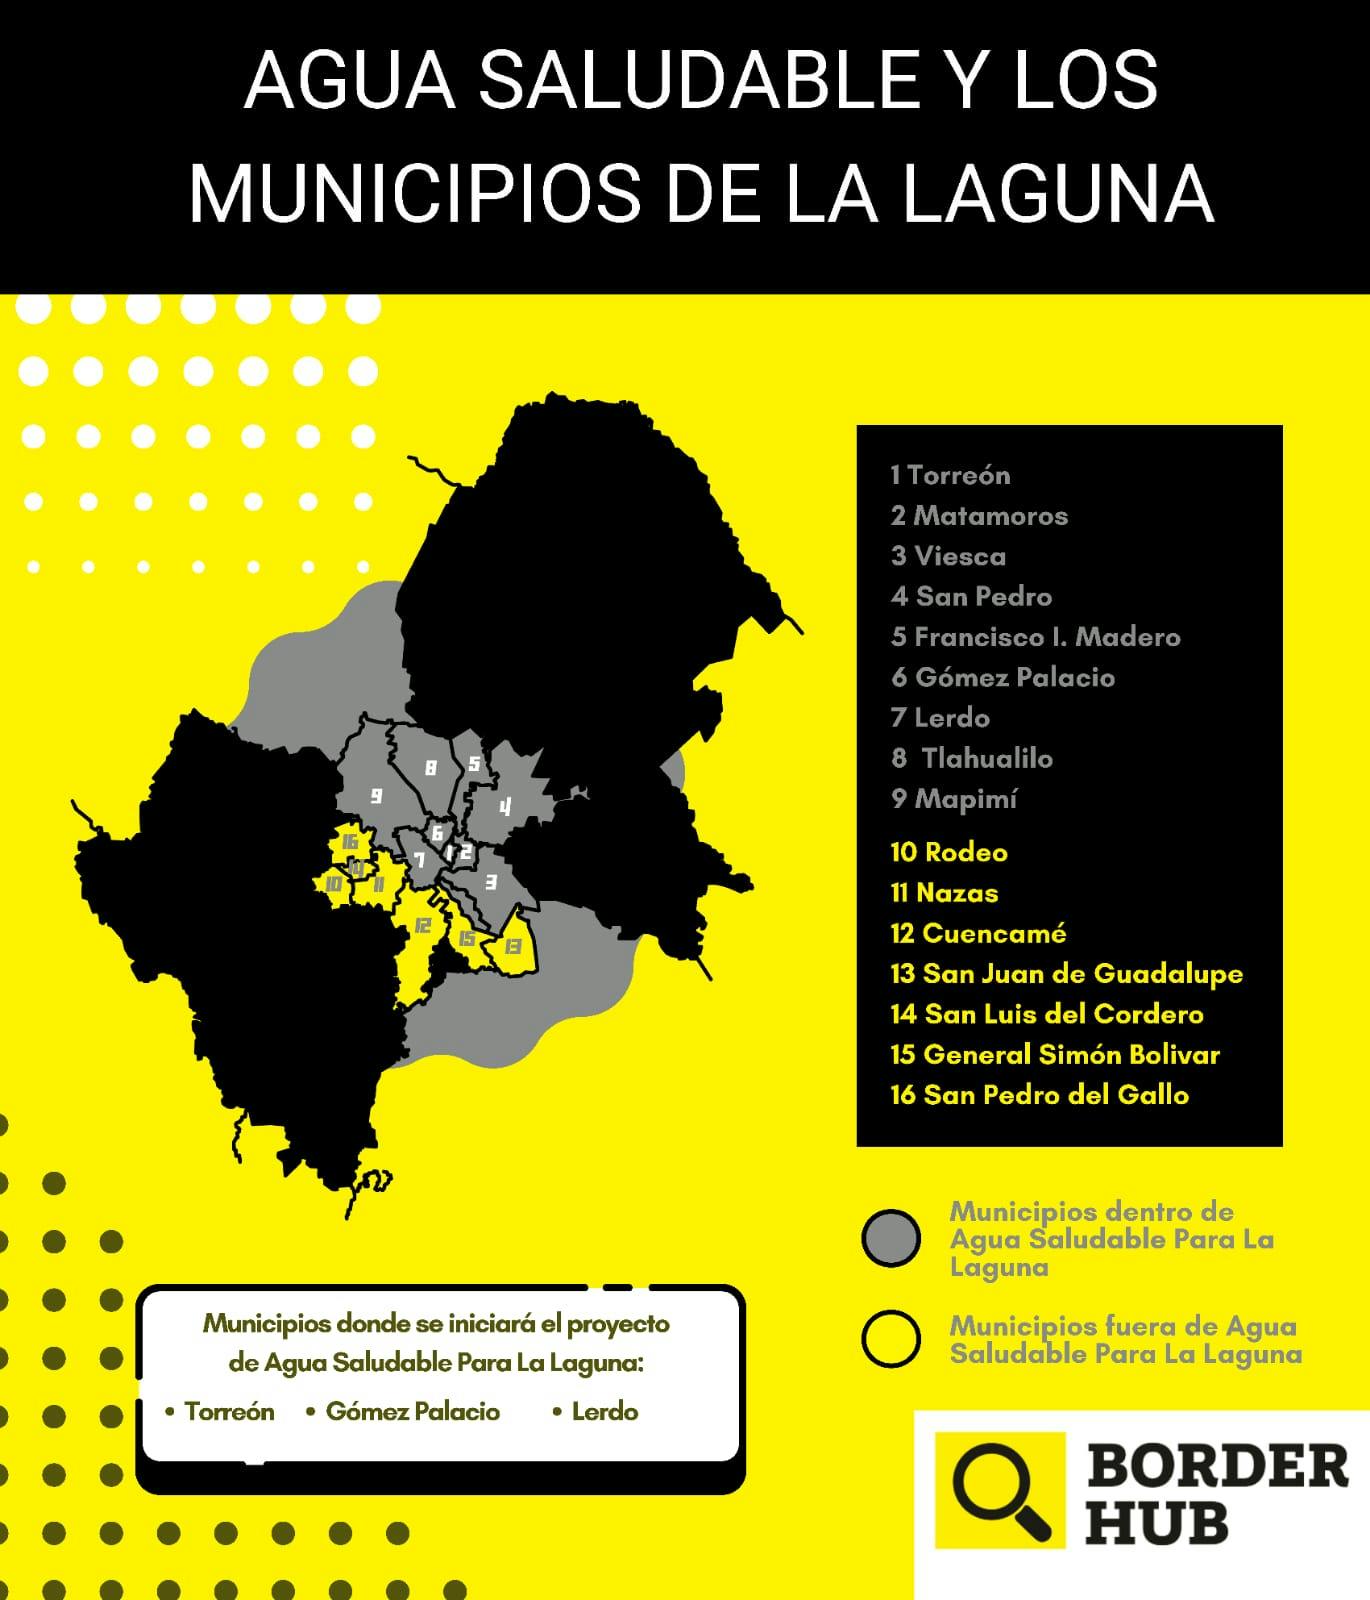 Agua Saludable y Los municipios de La Laguna